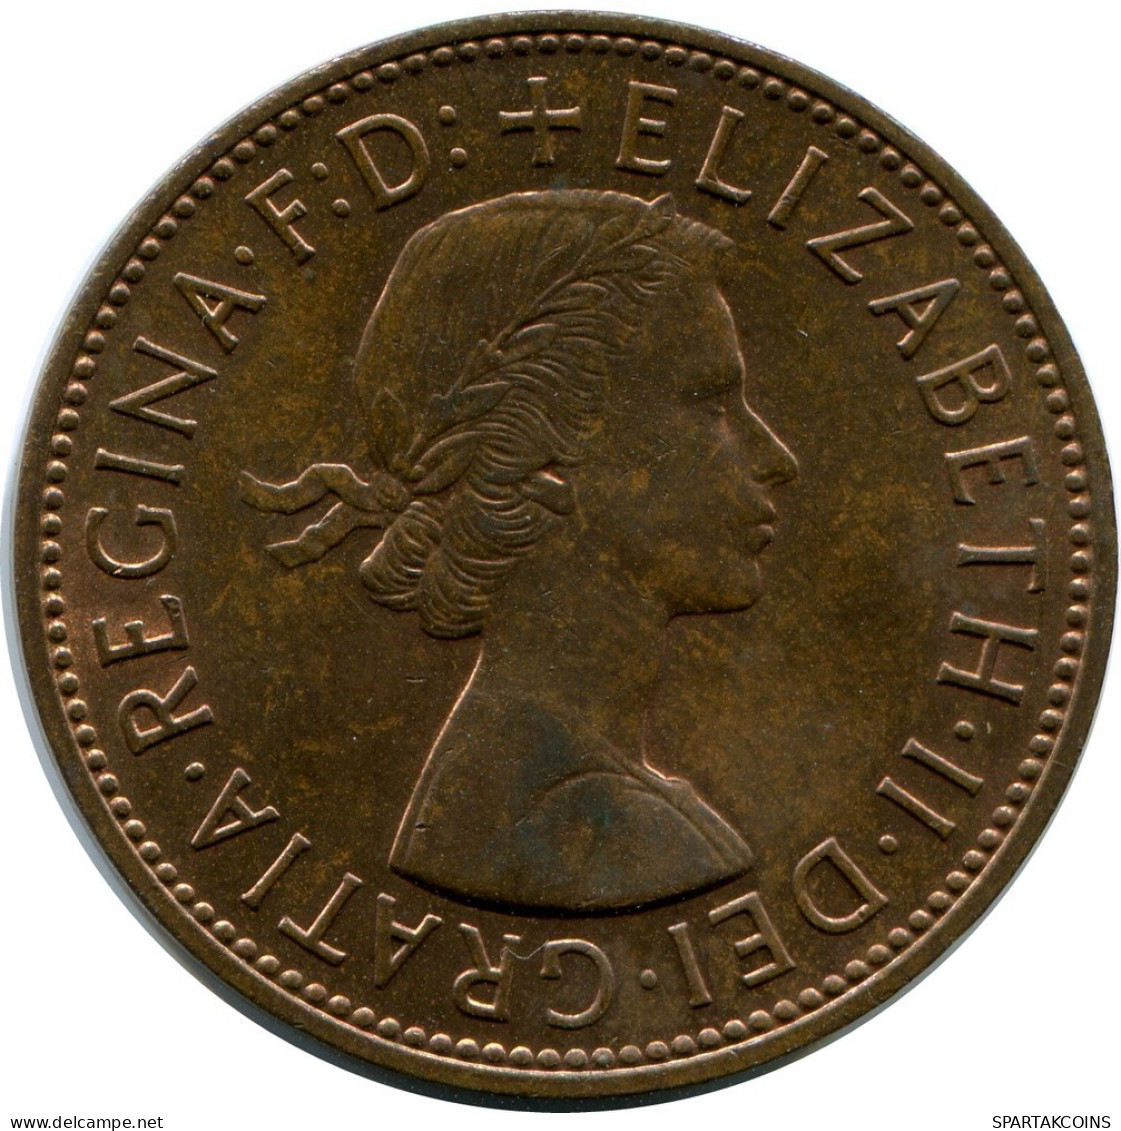 PENNY 1967 UK GROßBRITANNIEN GREAT BRITAIN Münze #AZ004.D.A - D. 1 Penny